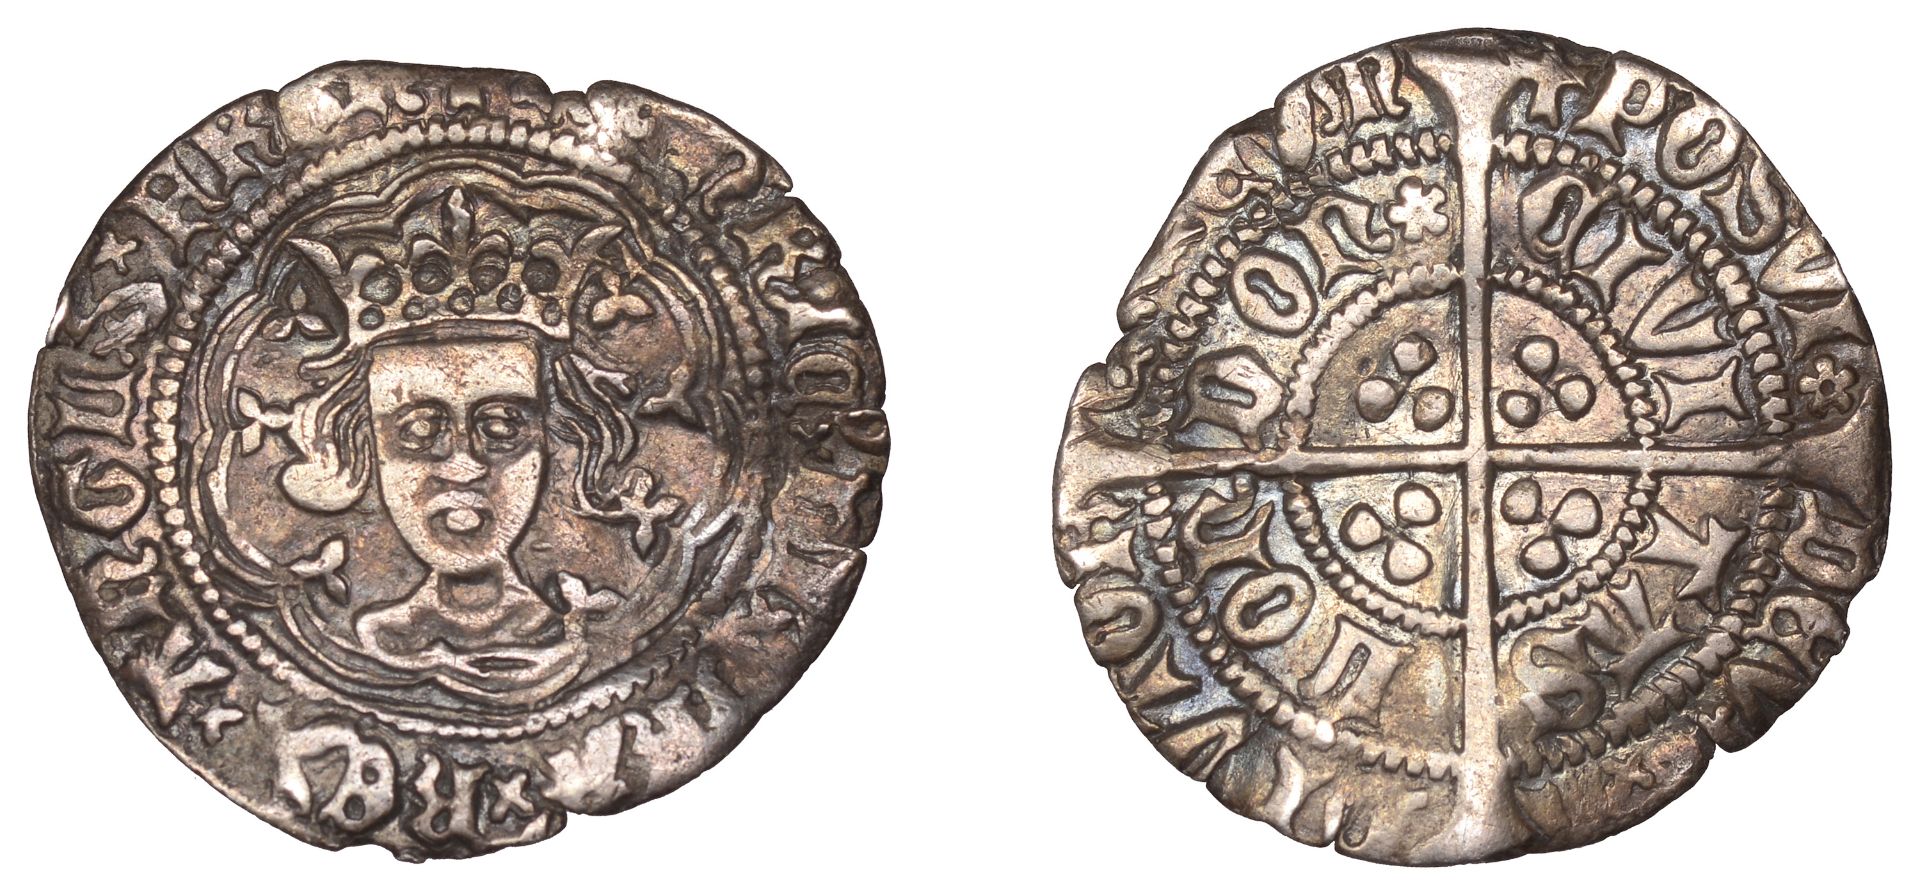 Henry VI (First reign, 1422-1461), Rosette-Mascle issue, Halfgroat, London, mm. cross V, sal...